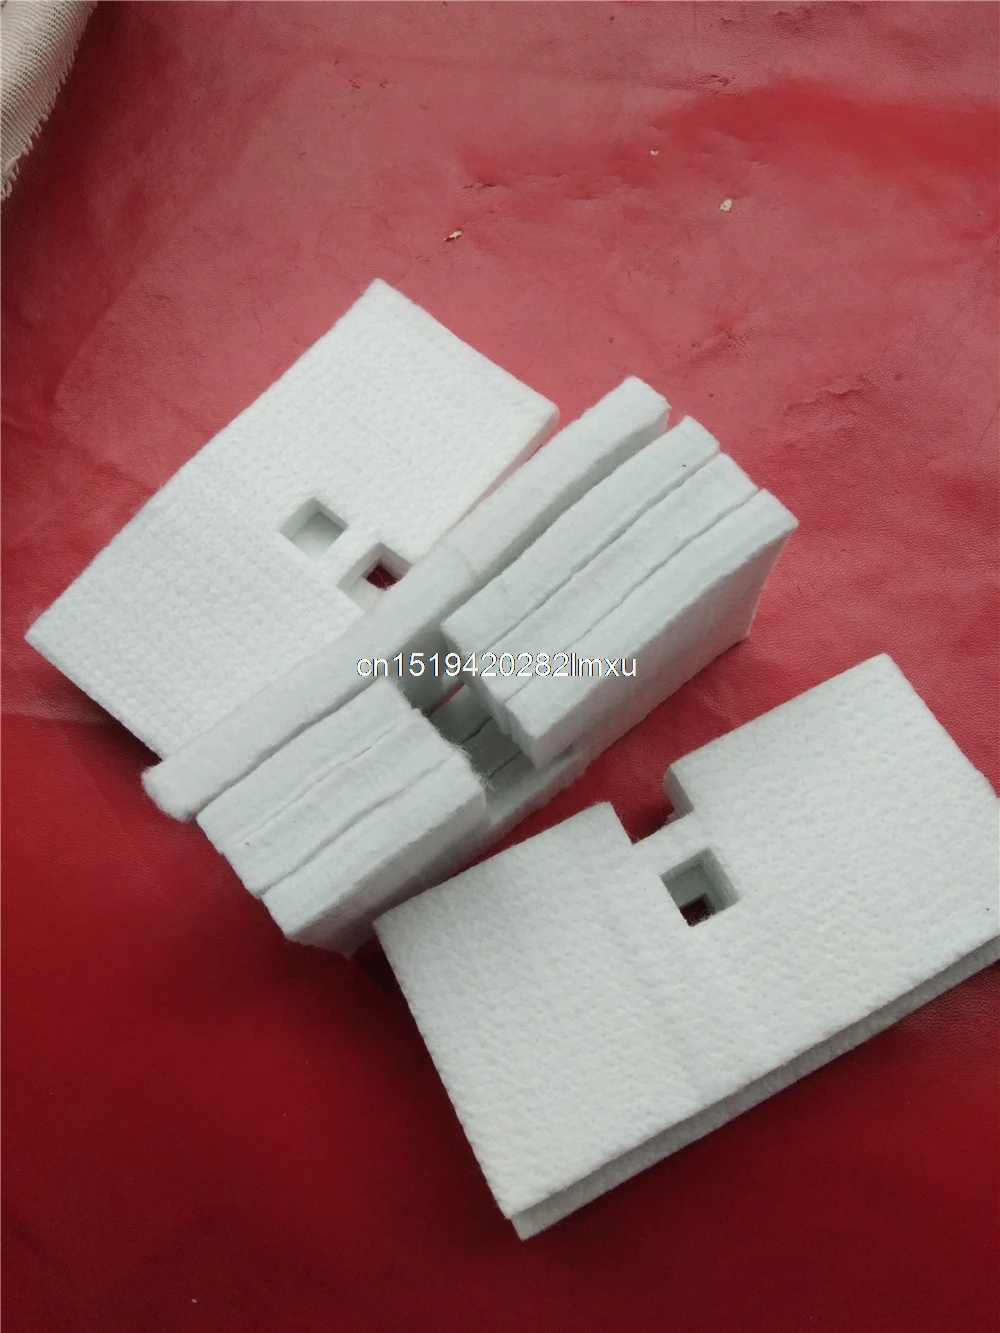 Pôvodné absorpčné podložky atrament hubky pre EPSON stylus K100 K200 K205 K105 K305 atrament pad odpadového atramentu údržba